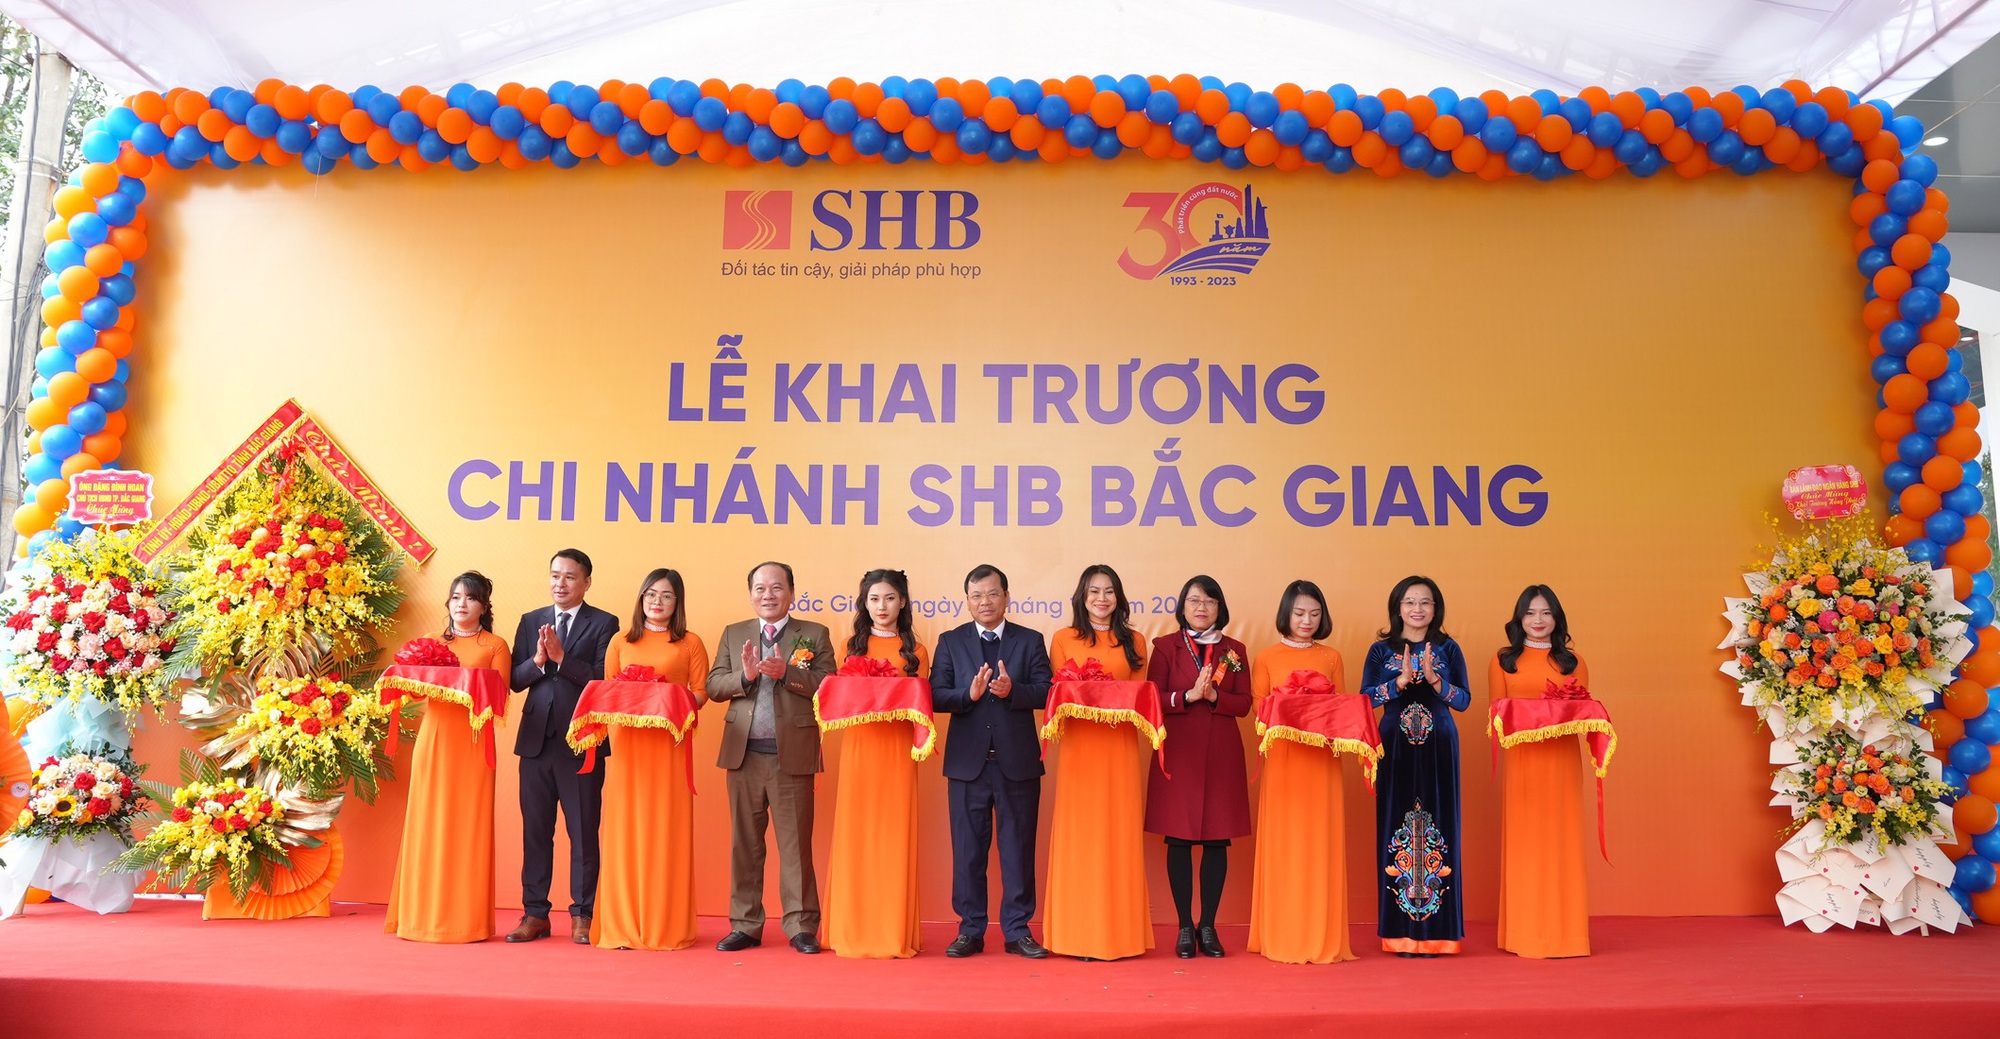 Ngày 18/12, SHB đã chính thức khai trương đi vào hoạt động SHB Bắc Giang, đưa sản phẩm dịch vụ SHB đến gần hơn với người dân địa phương.